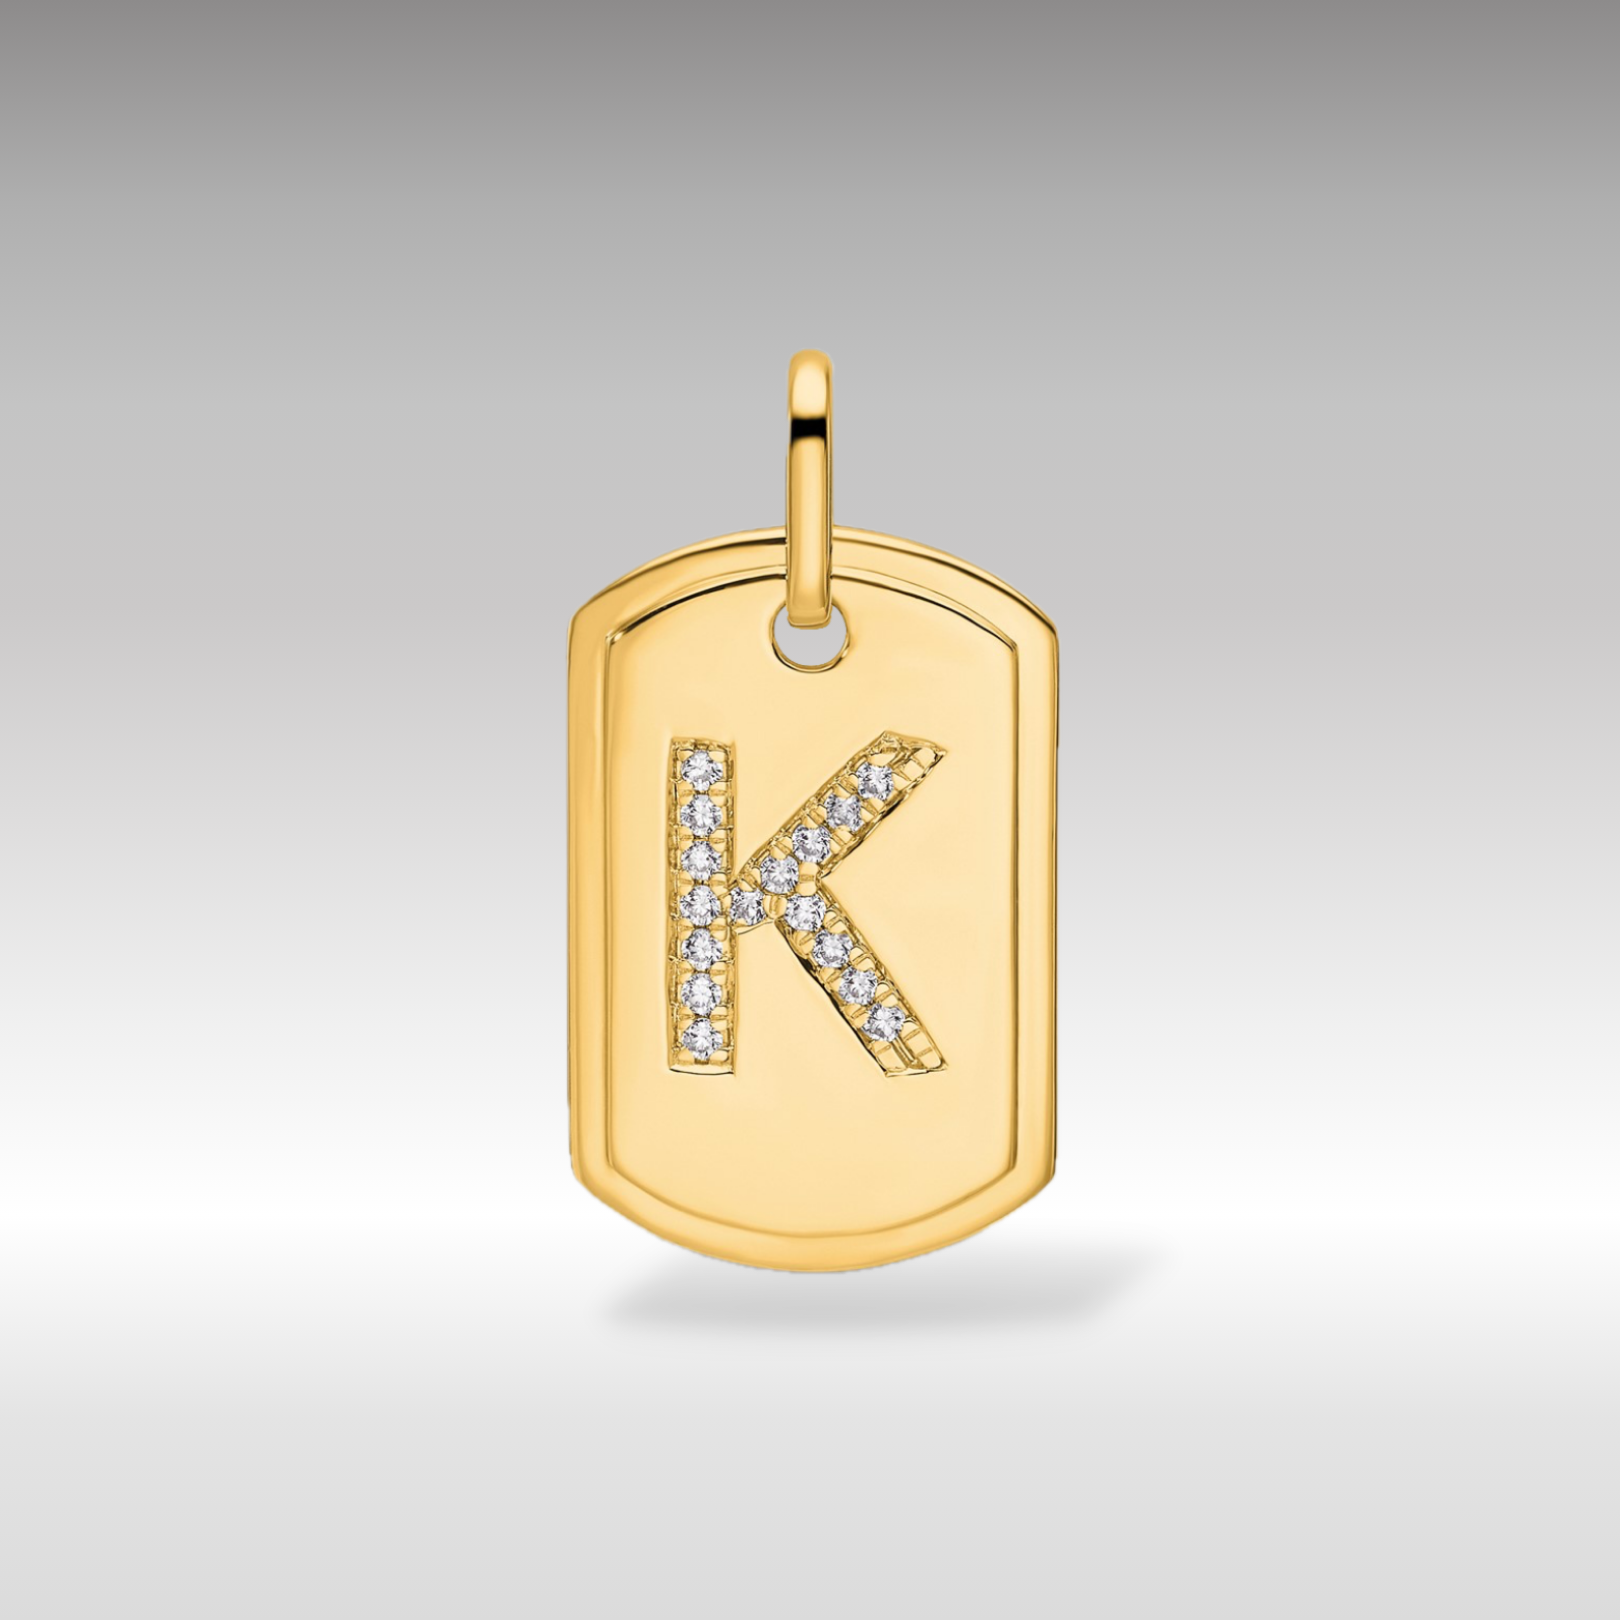 14K Gold Initial "K"  Dog Tag With Genuine Diamonds - Charlie & Co. Jewelry